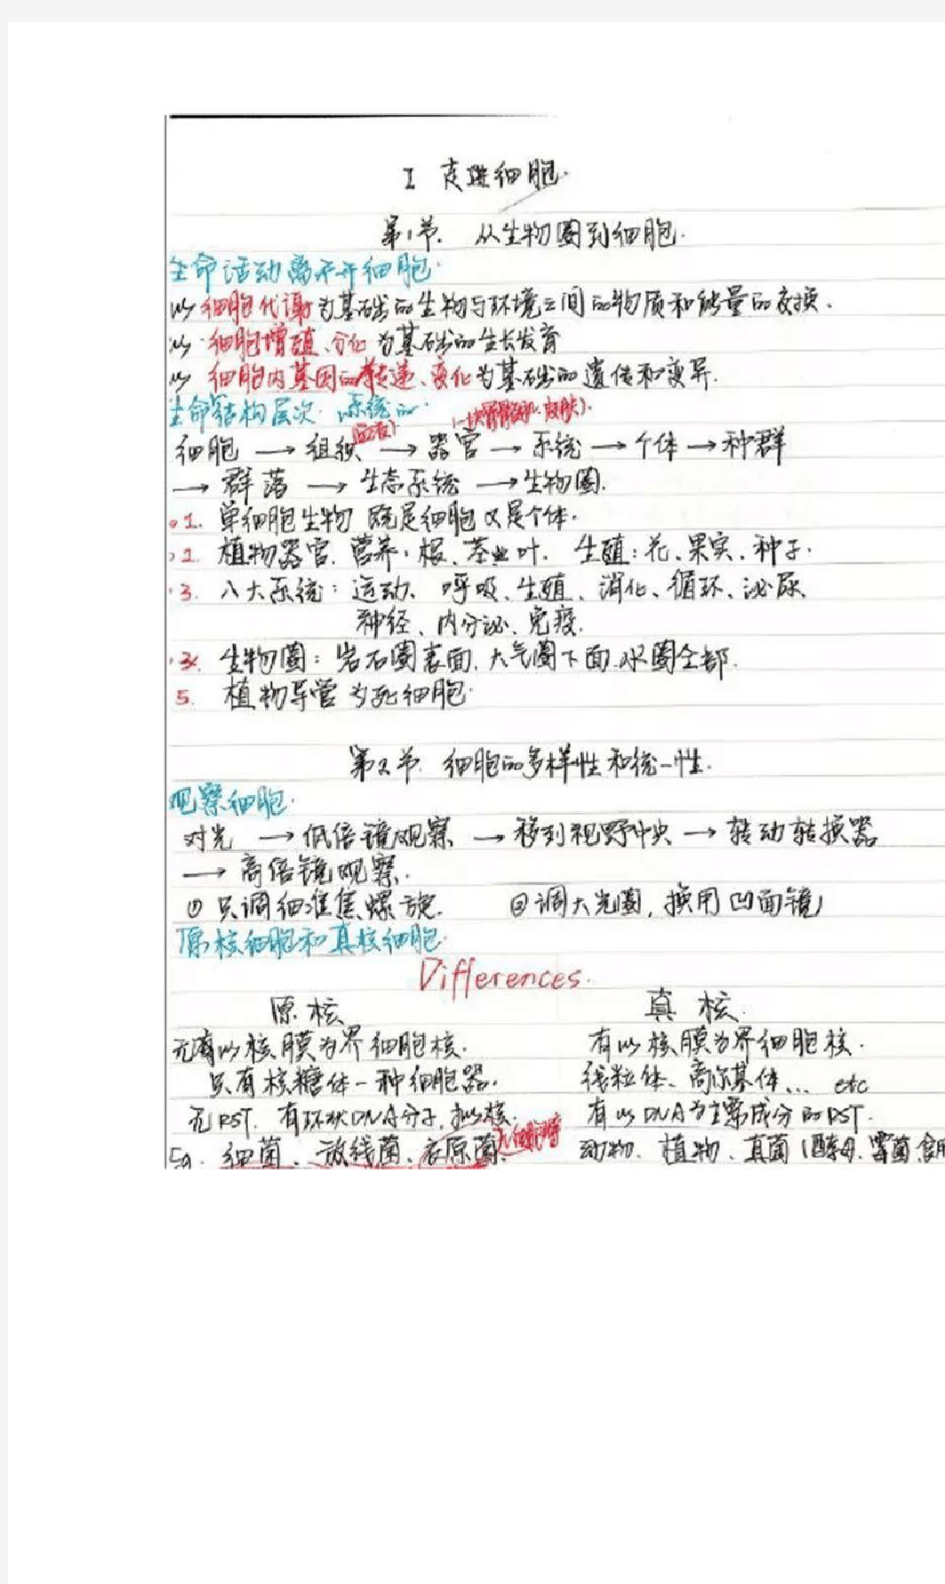 衡中高考学霸分享生物超清手写笔记!